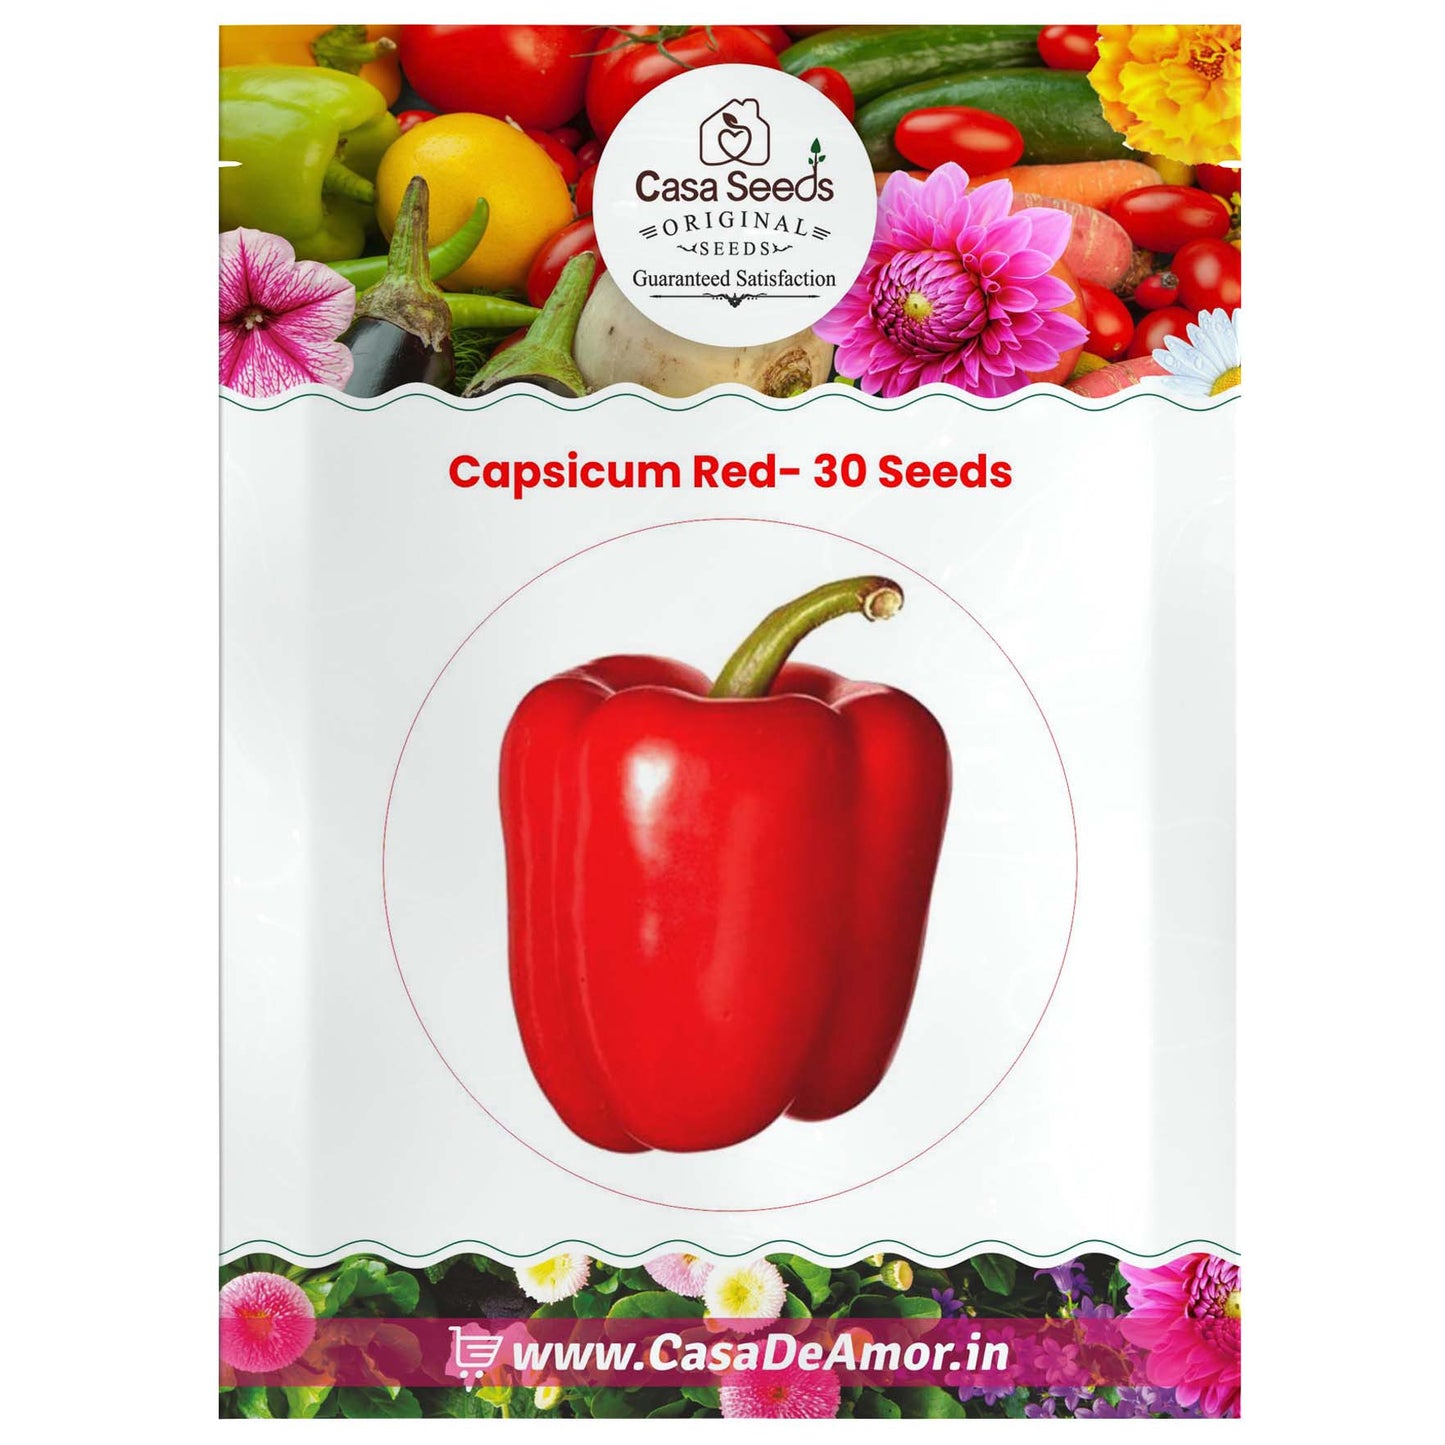 Capsicum Red- 30 Seeds